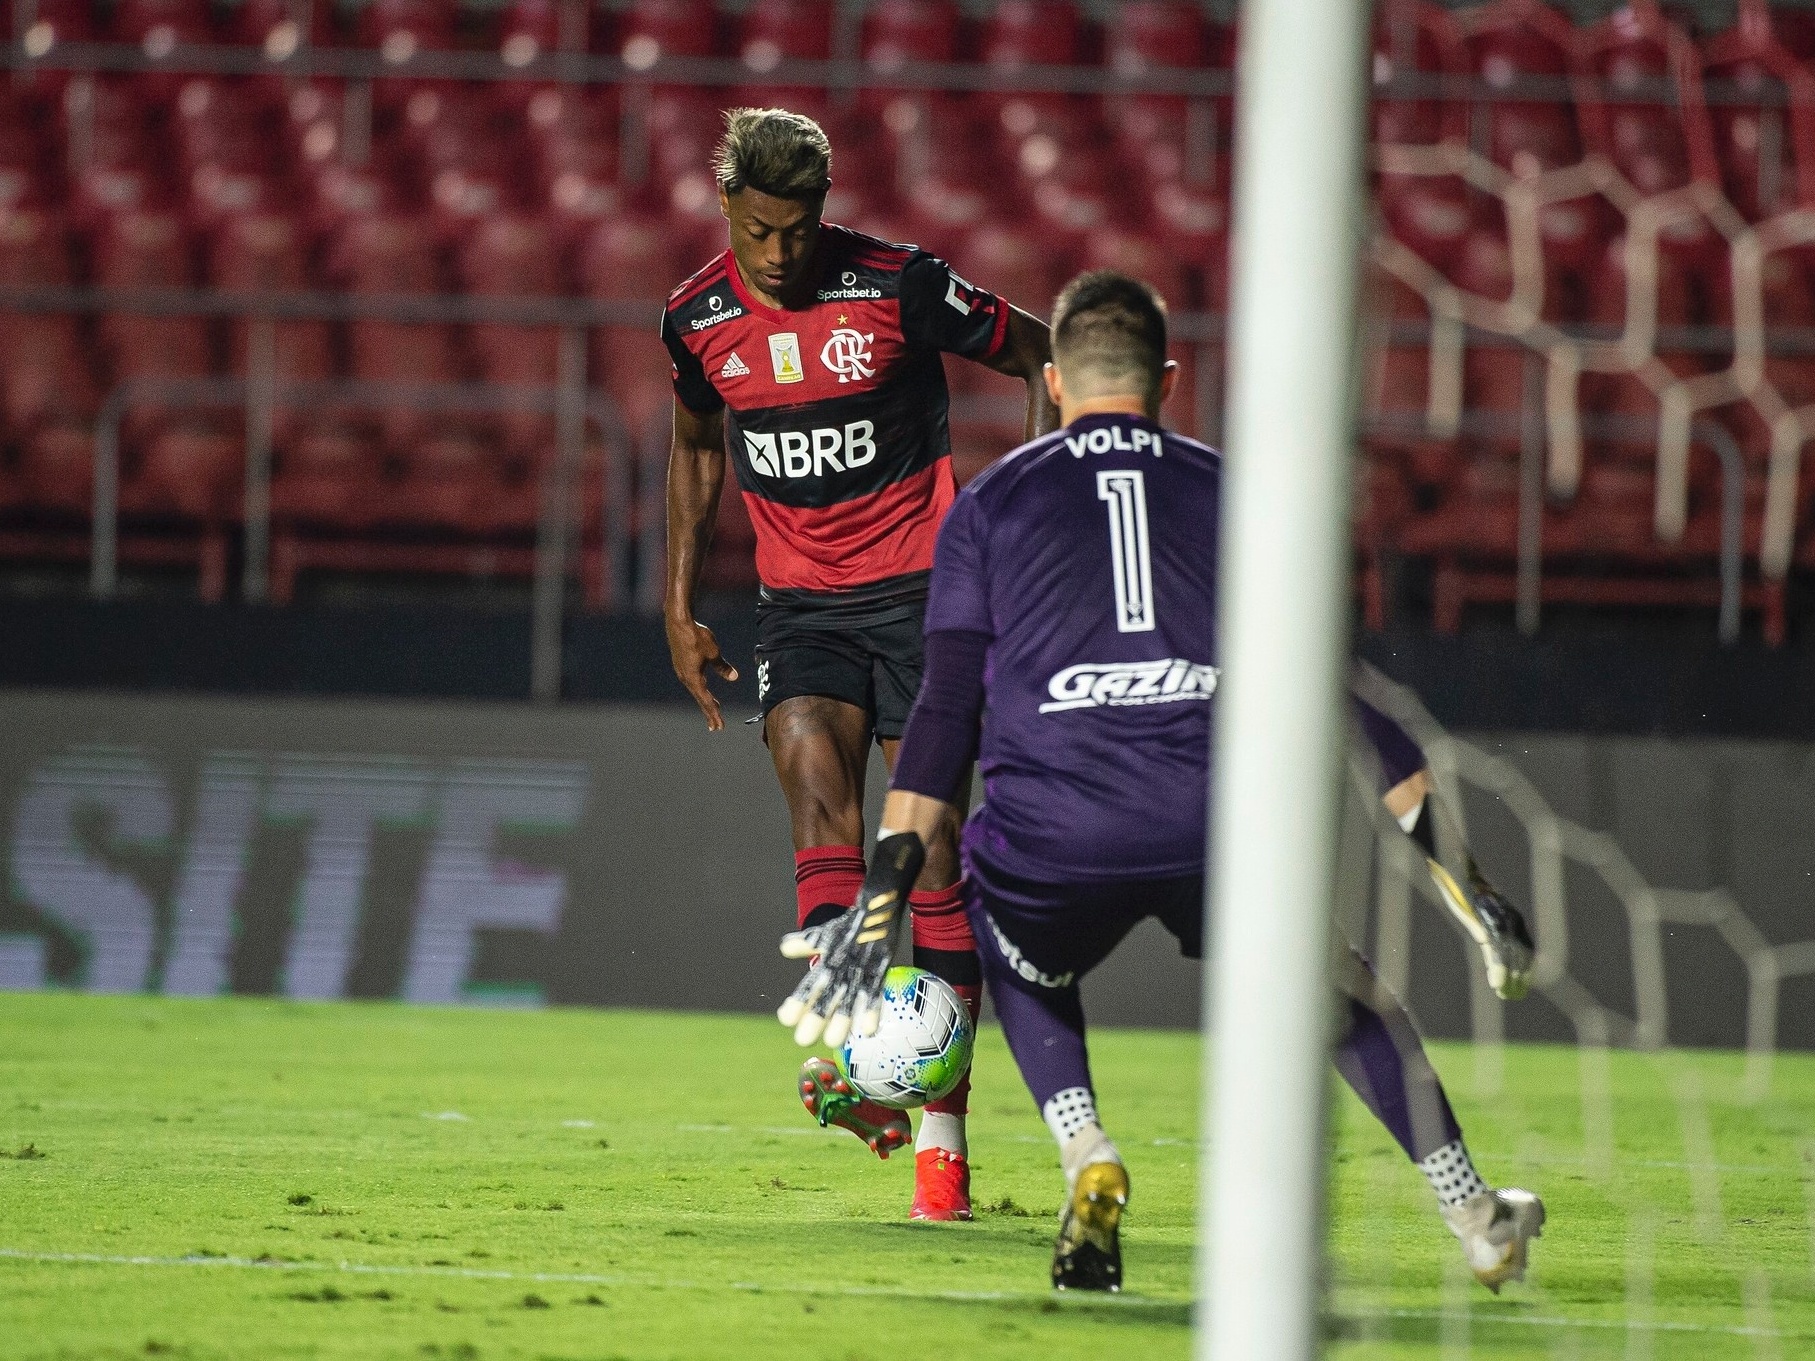 Flamengo goleou a maioria dos jogos após a chegada de Renato